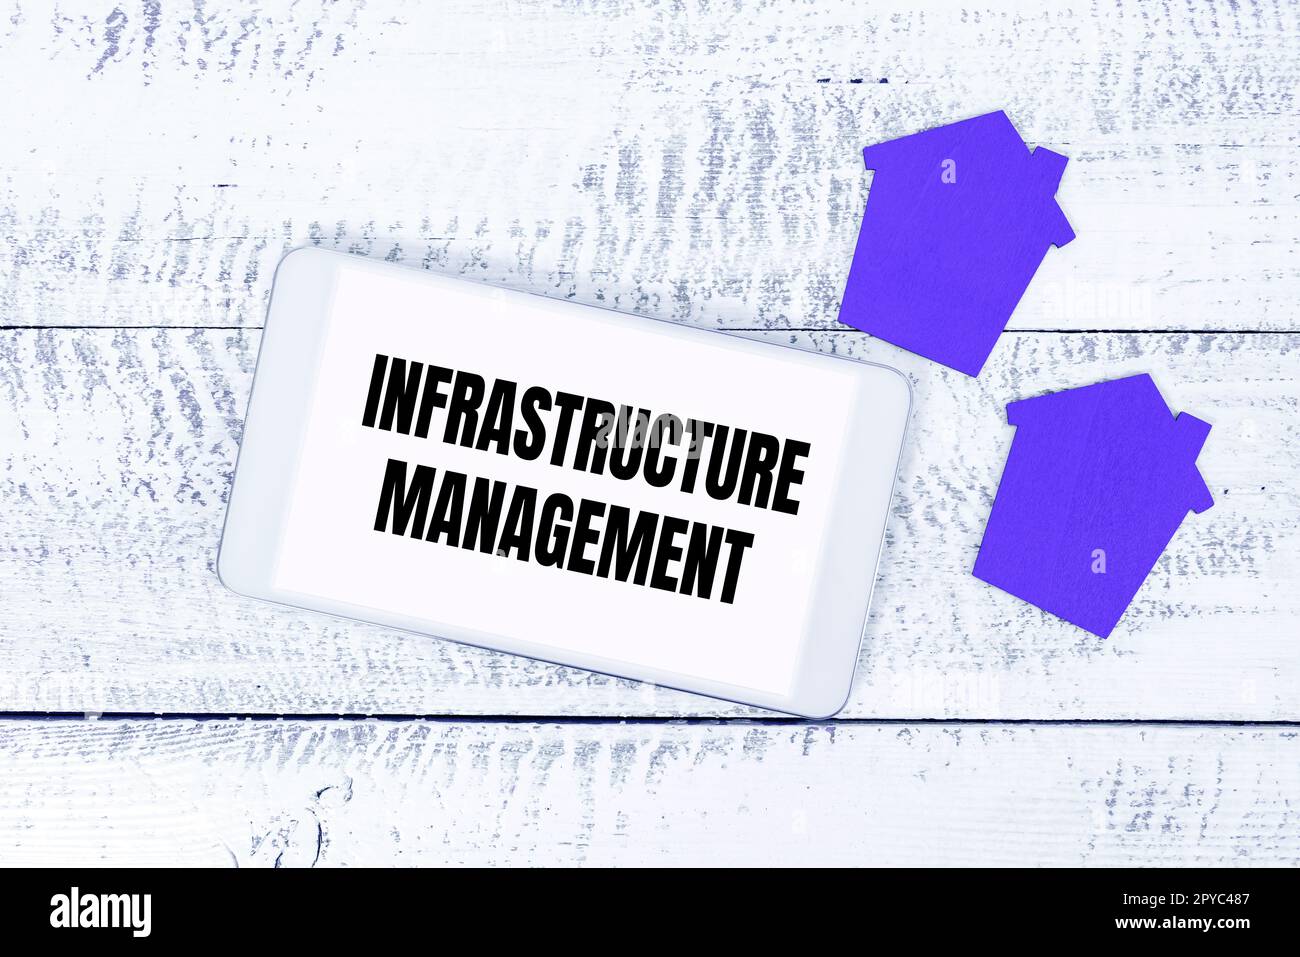 Textüberschrift zur Darstellung von Infrastructure Management. Geschäftskonzept Minimieren Sie Ausfallzeiten, erhalten Sie die Unternehmensproduktivität aufrecht Stockfoto